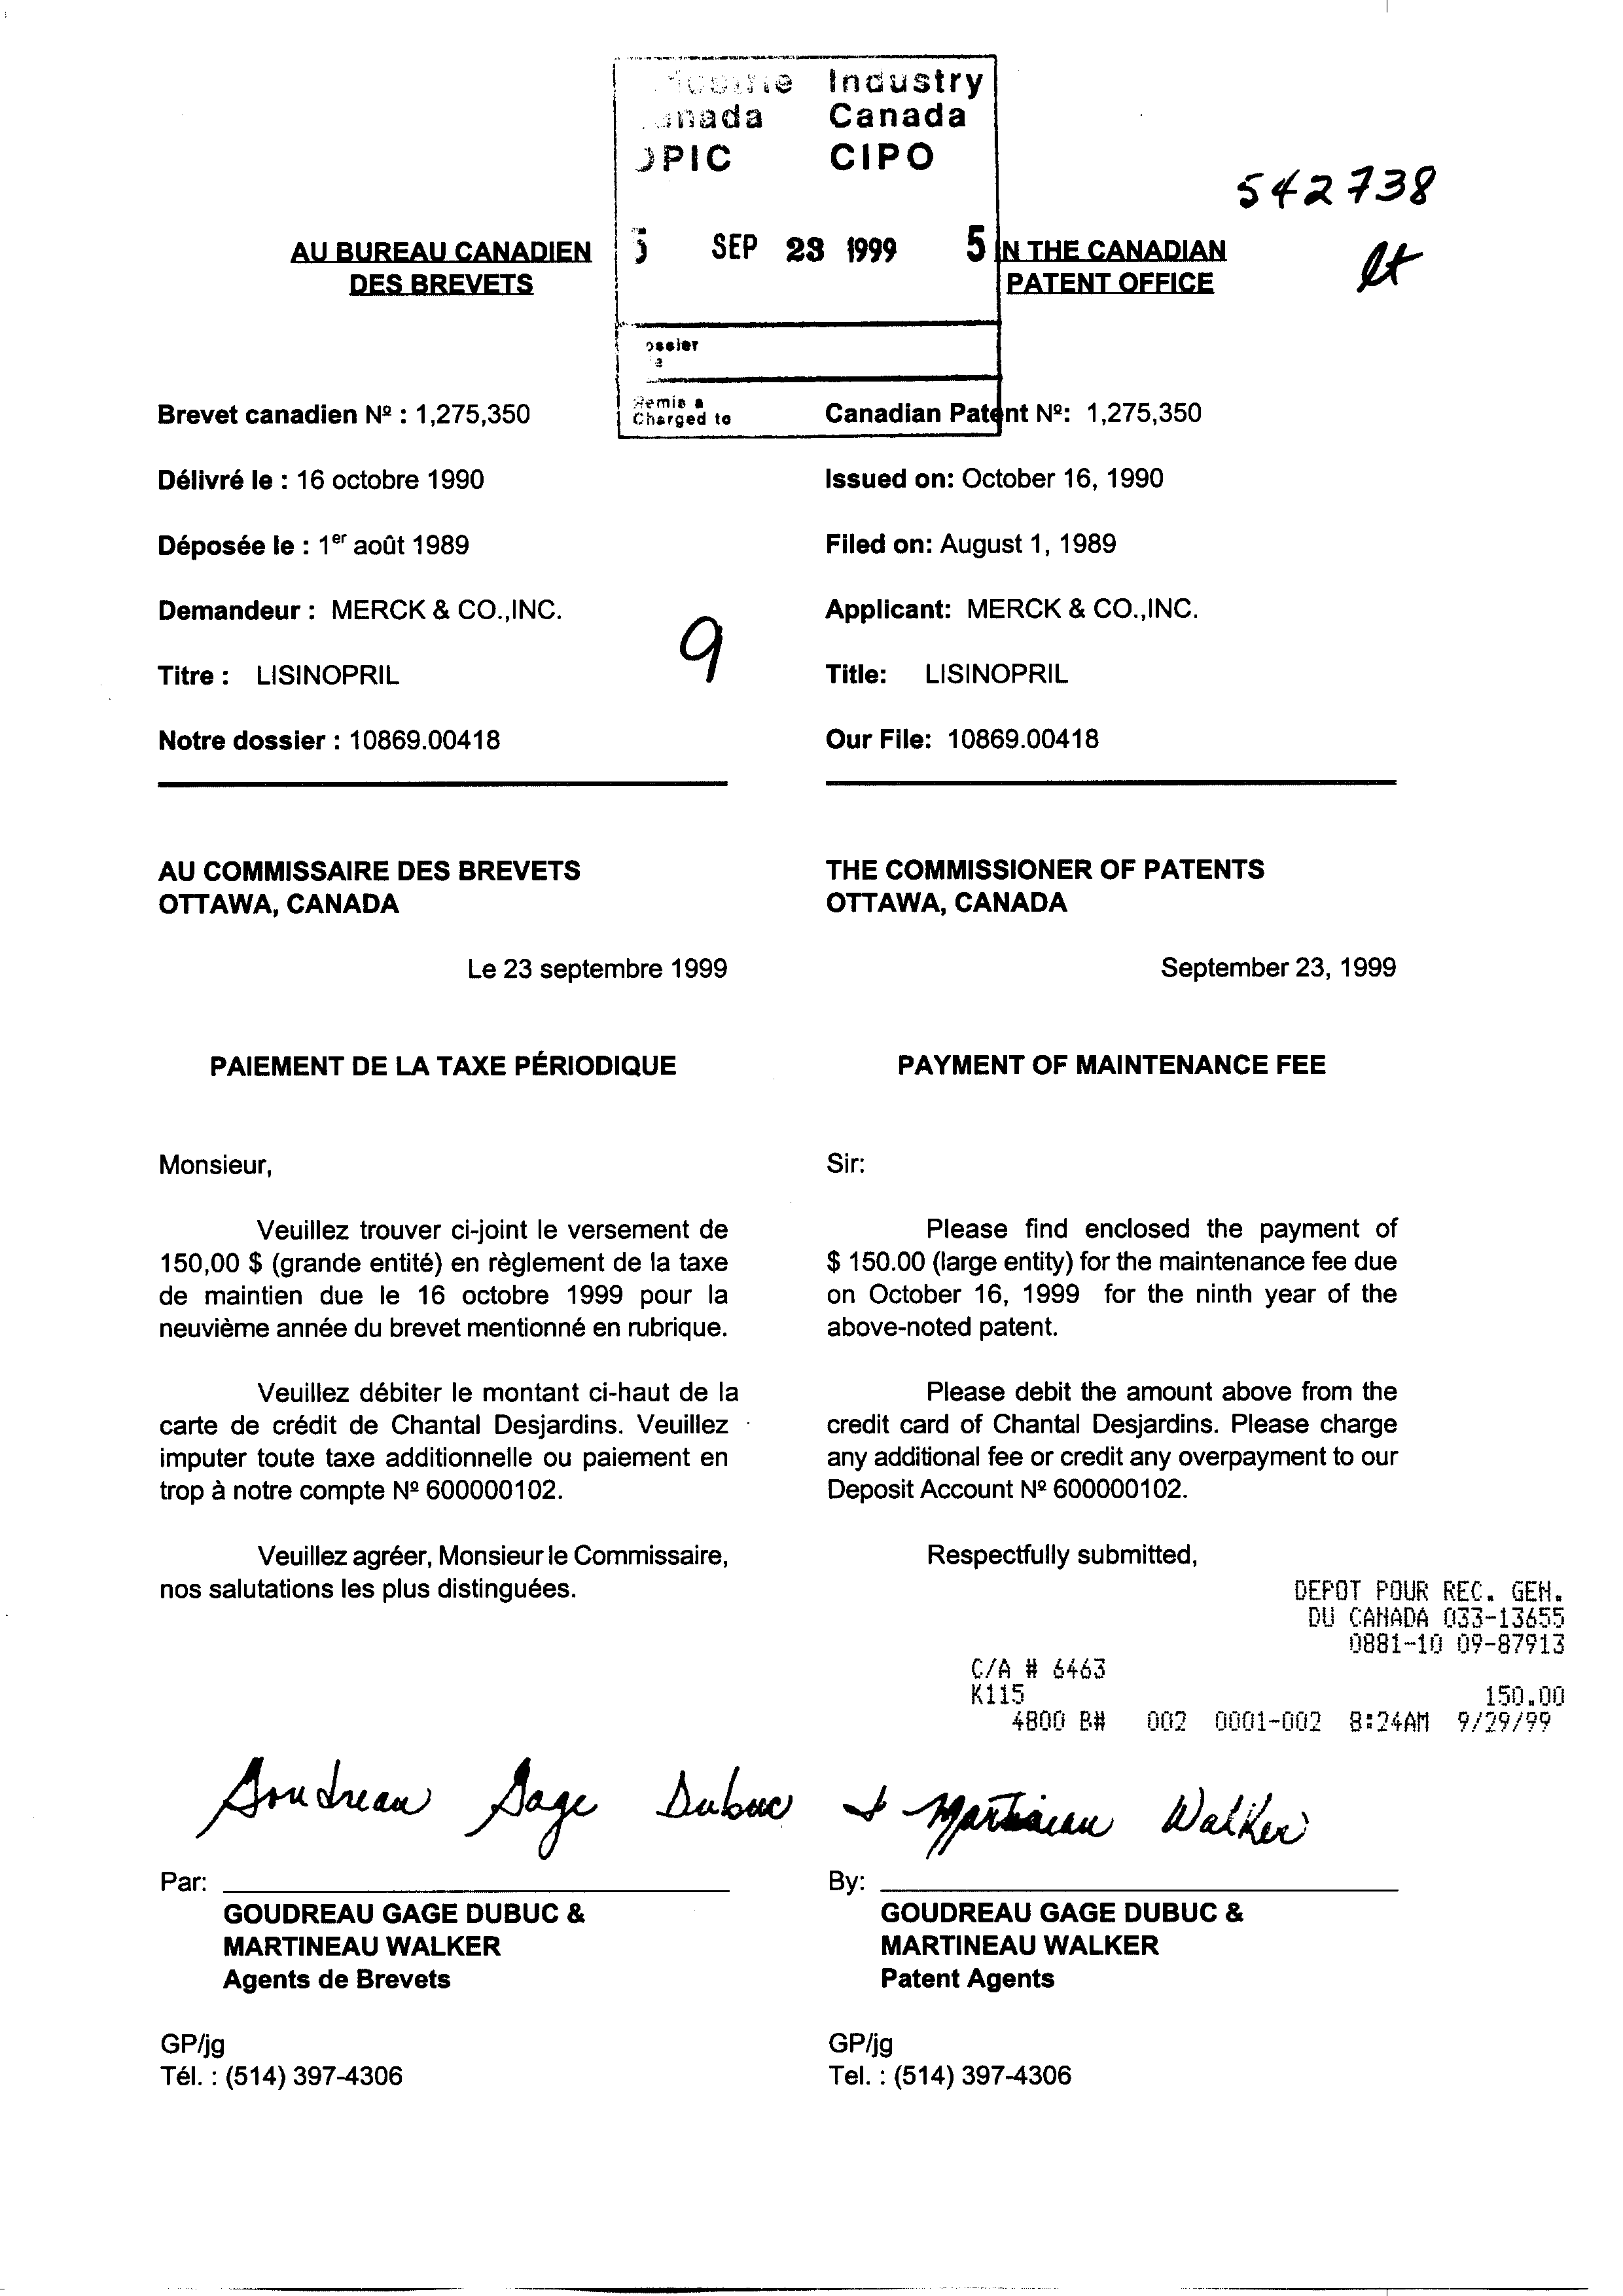 Document de brevet canadien 1275350. Taxes 19981223. Image 1 de 1